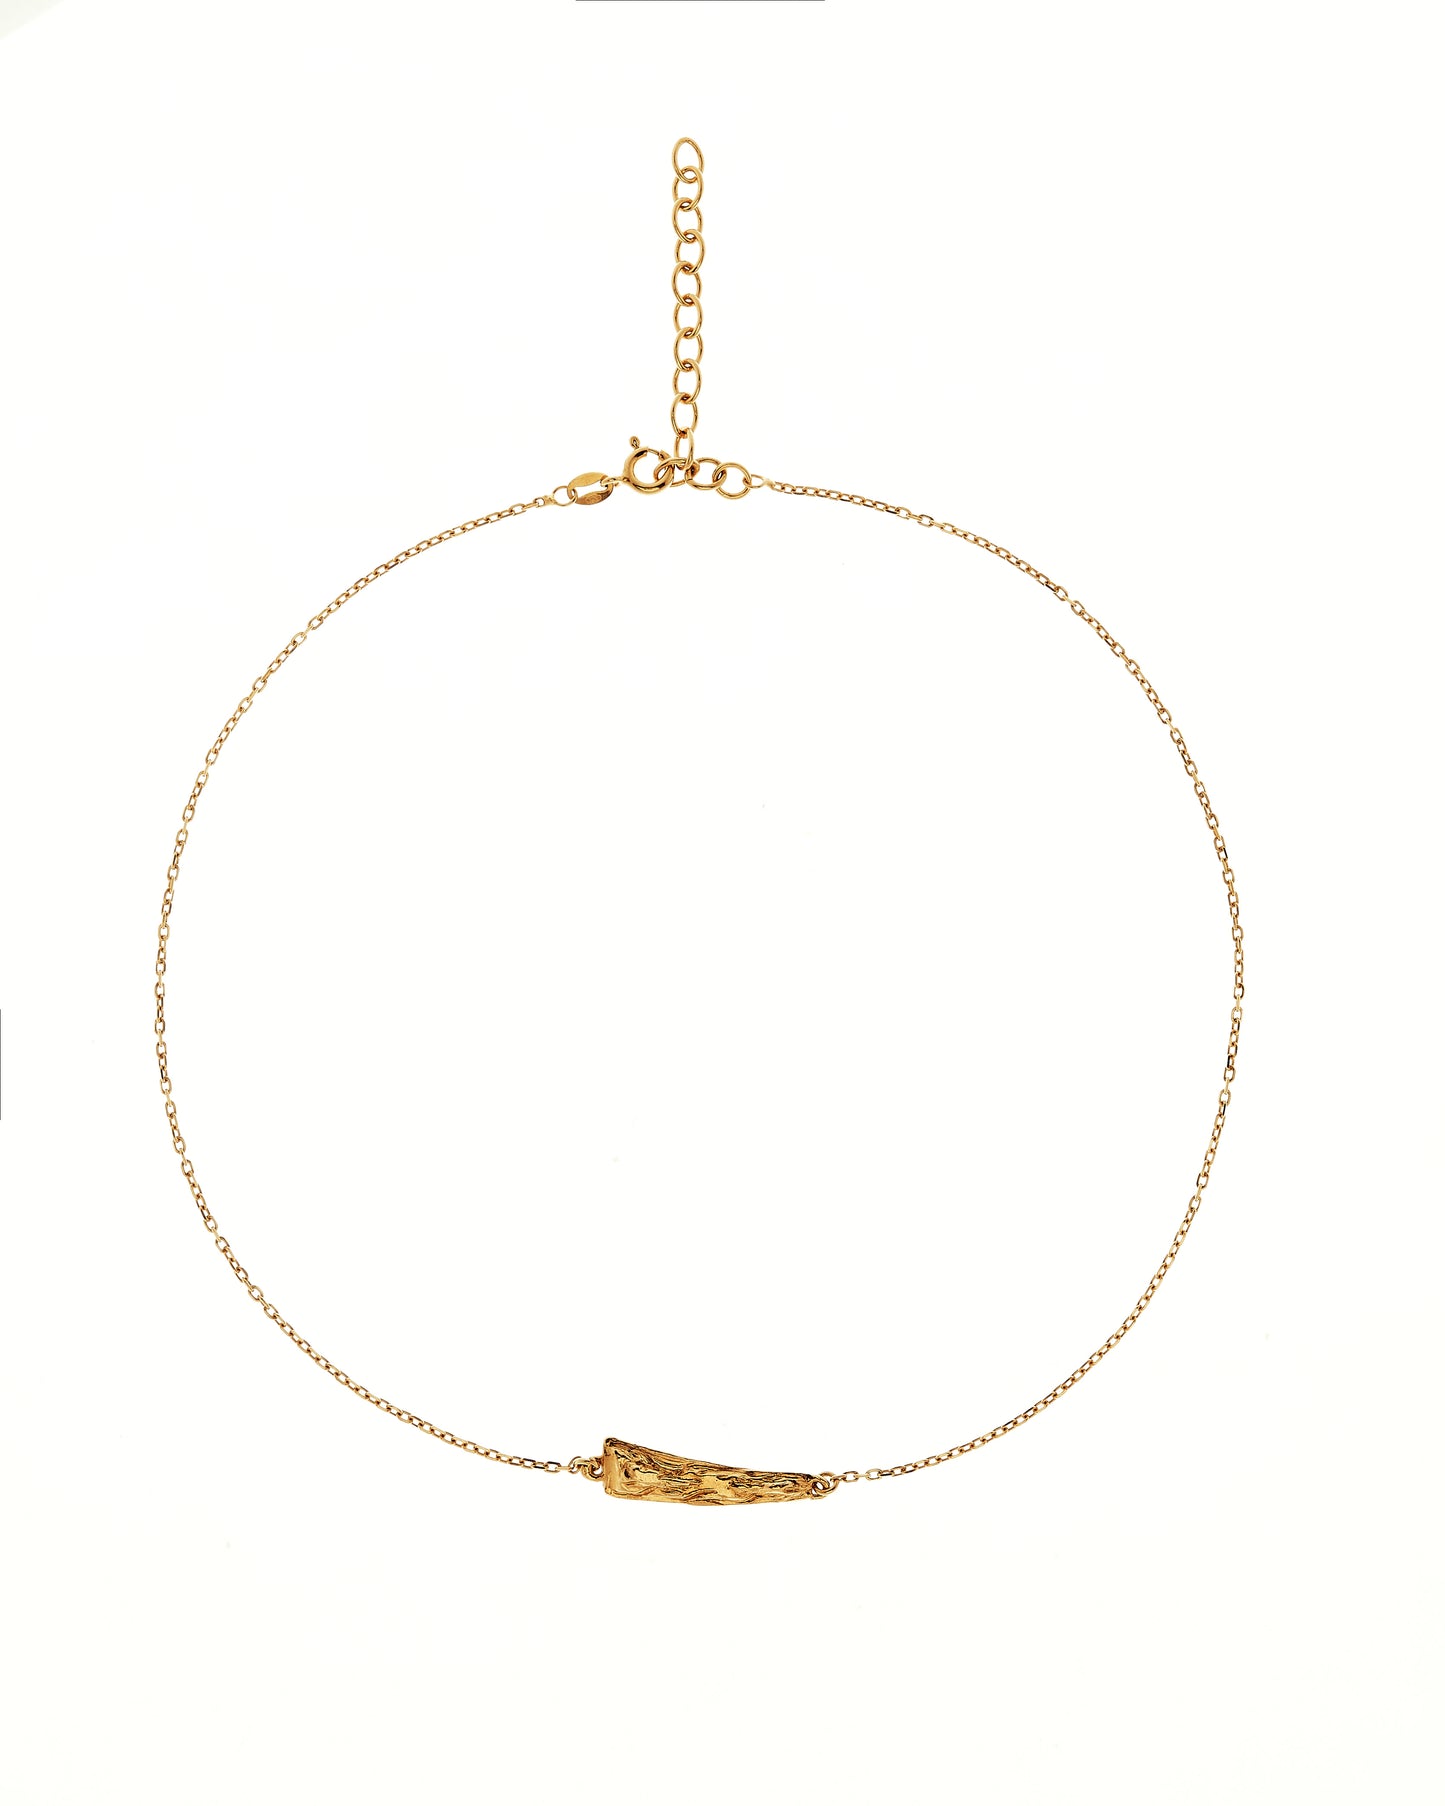 Gold vermeil pendant showing extender chain 